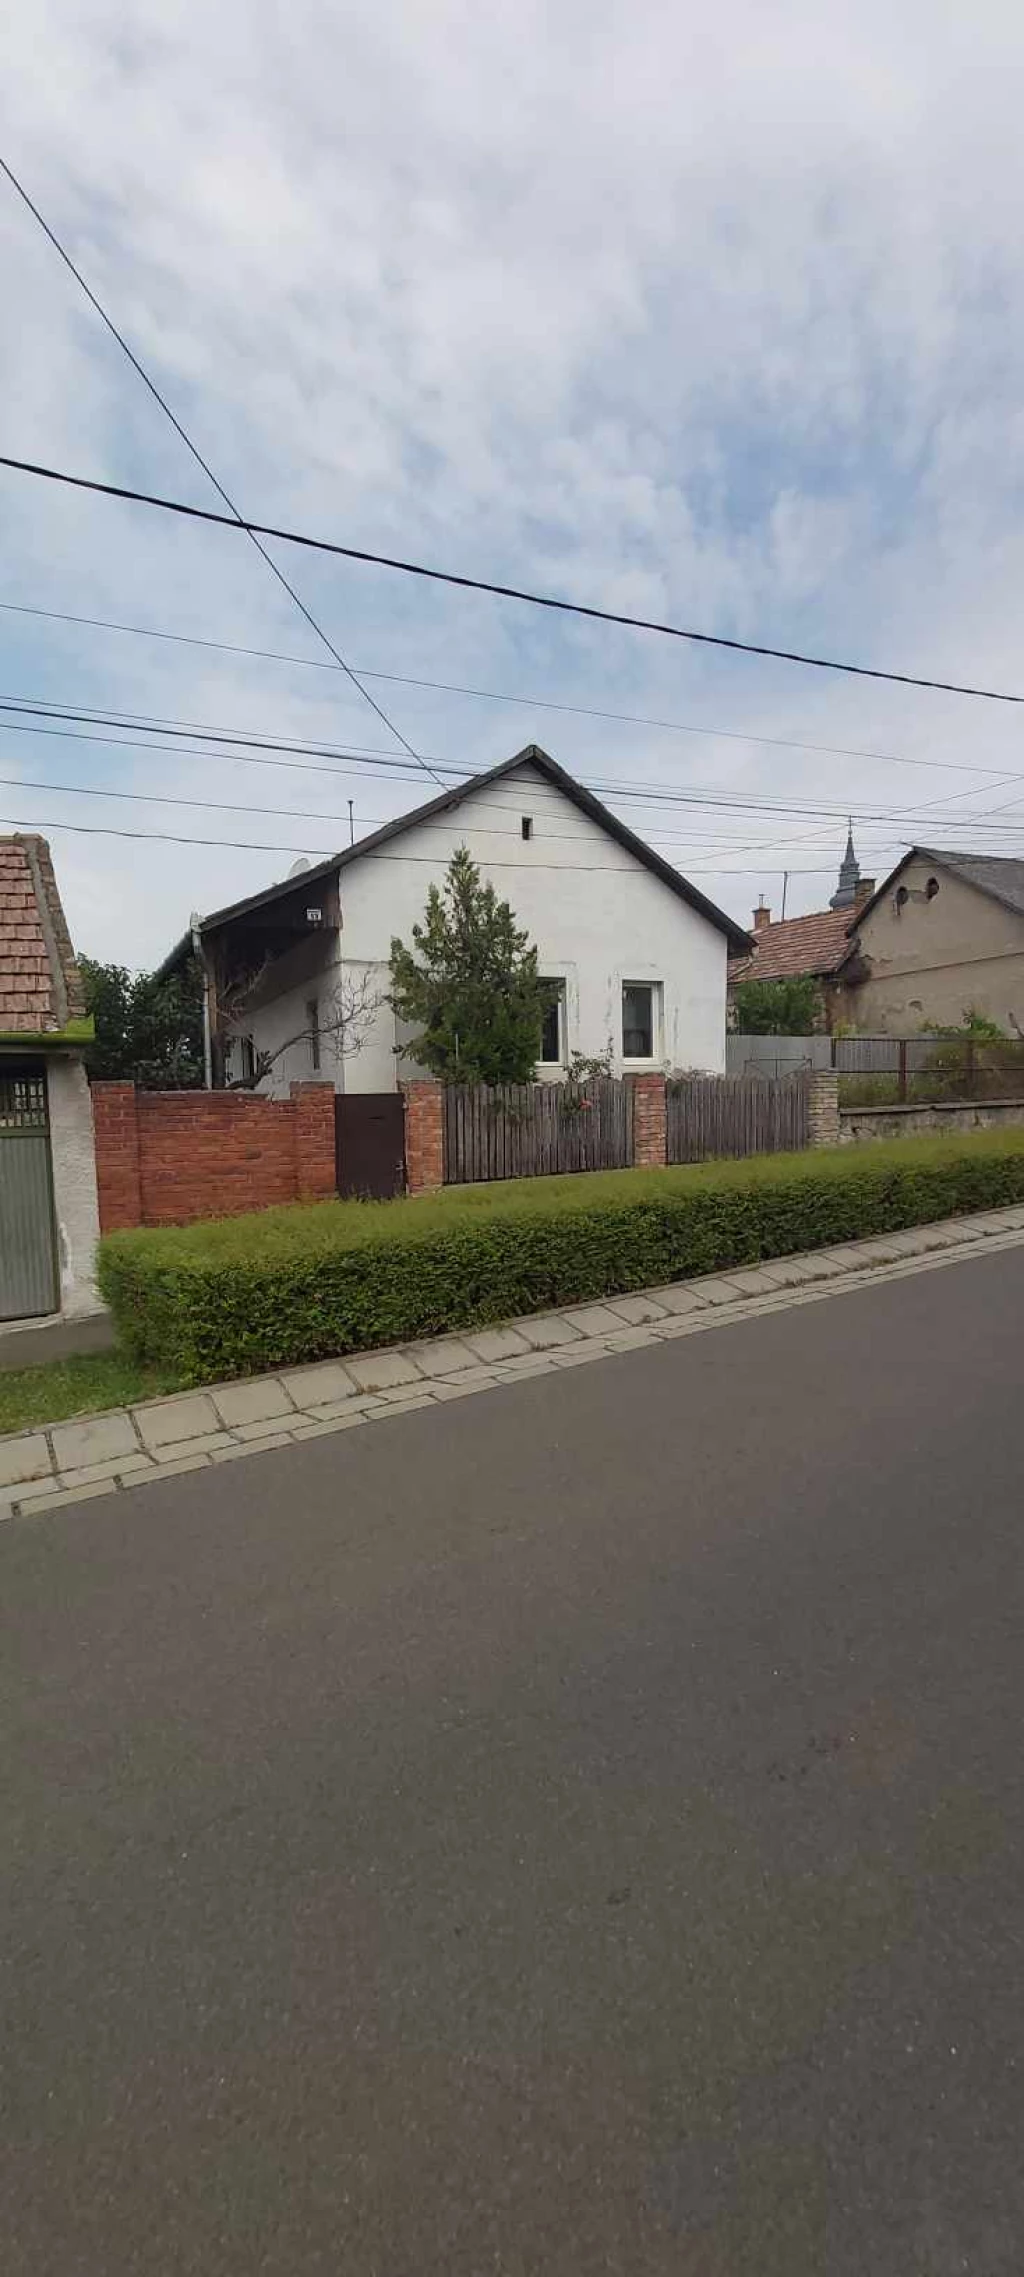 For sale house, Pásztó